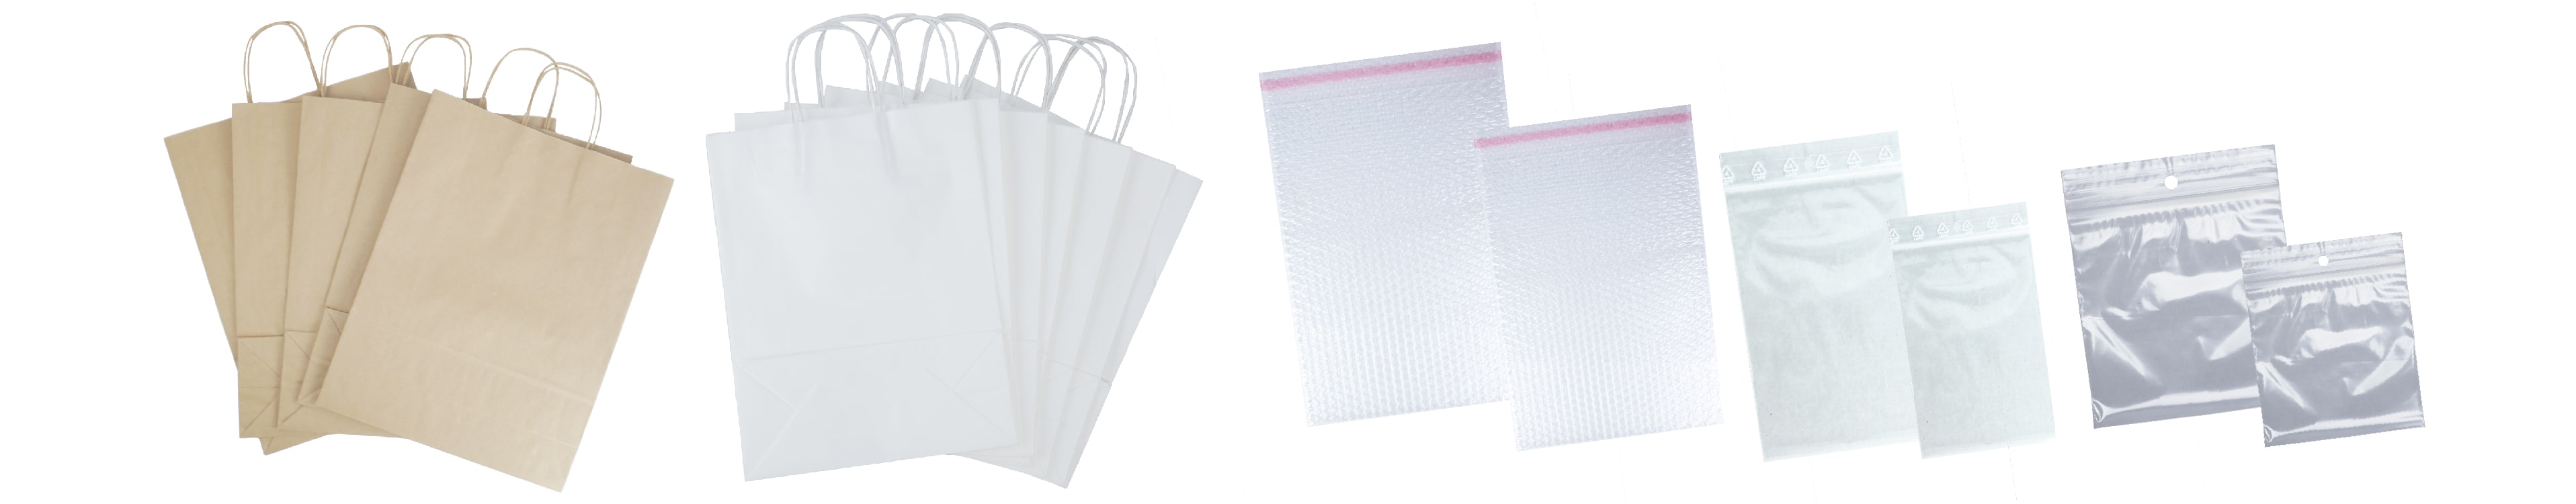 Plastic packaging bags